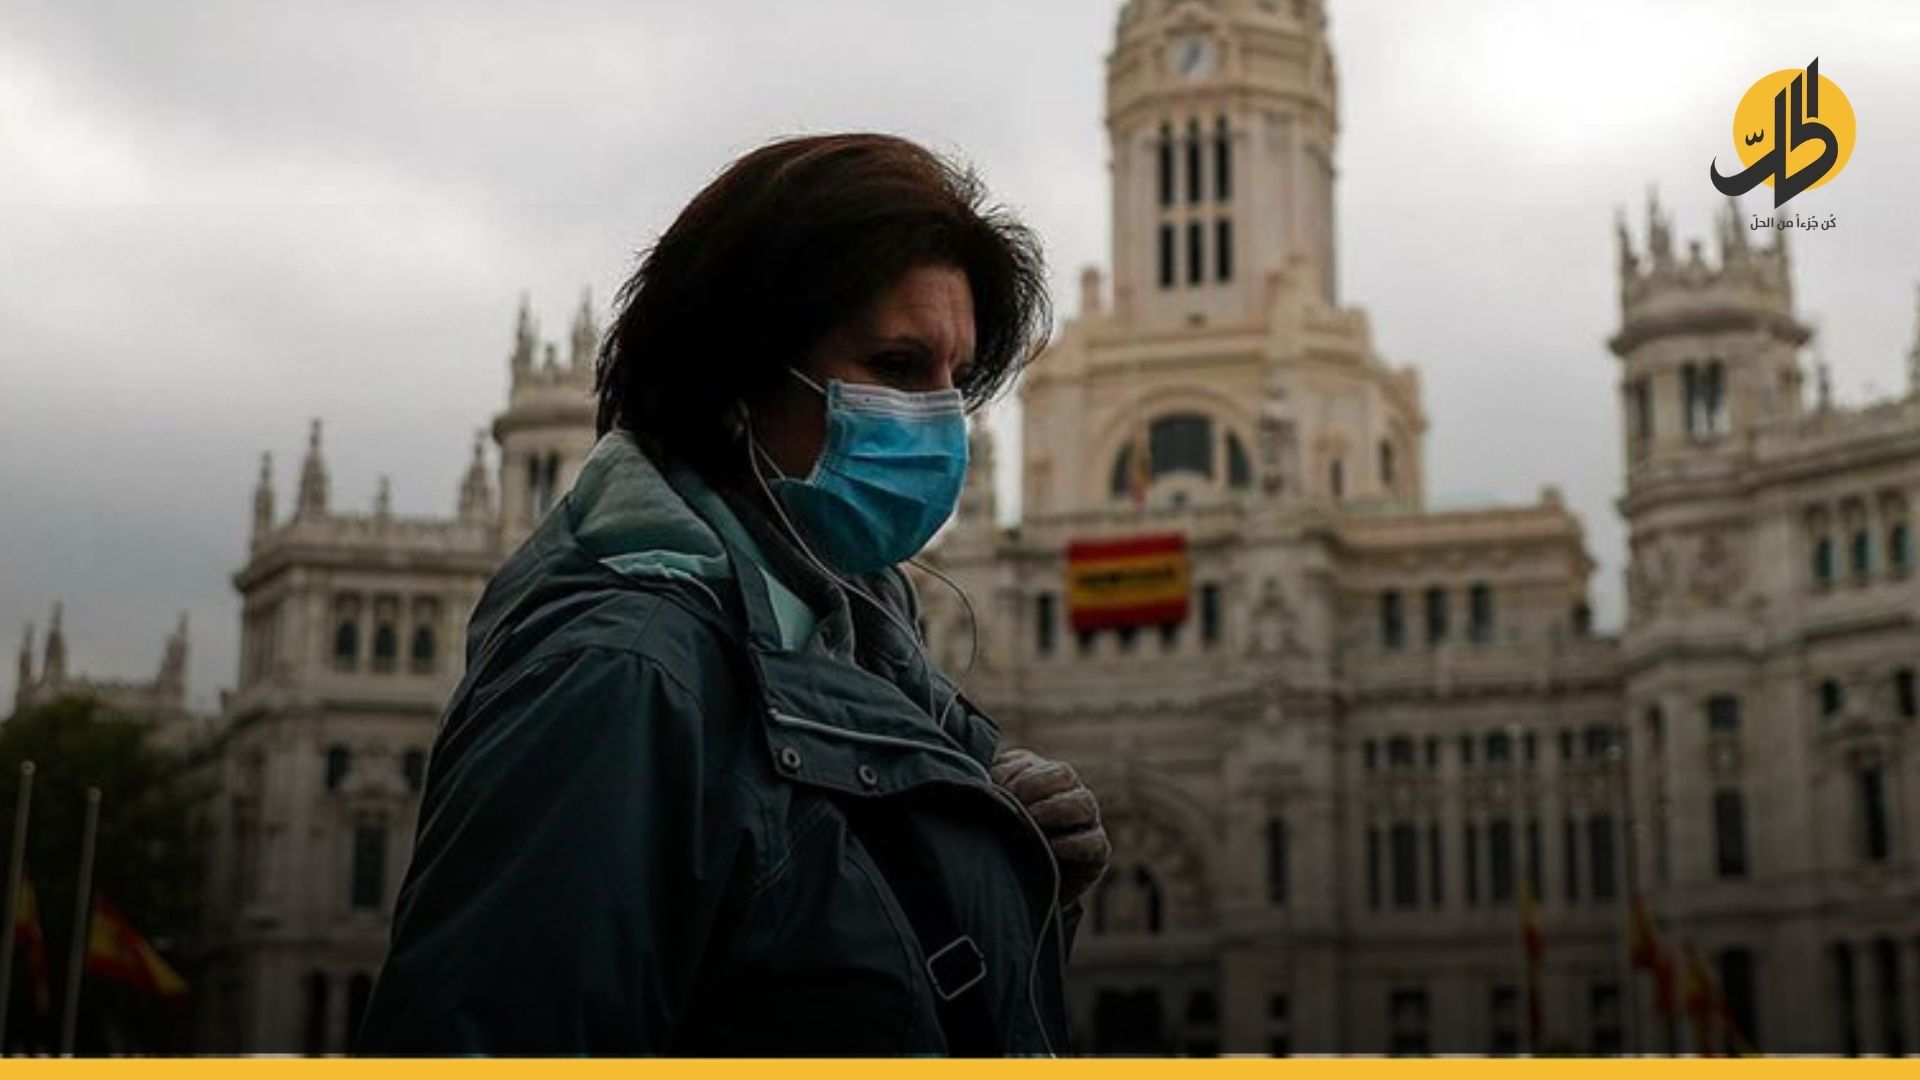 دولة أوروبية تُعلن نهاية فيروس “كورونا” على أراضيها